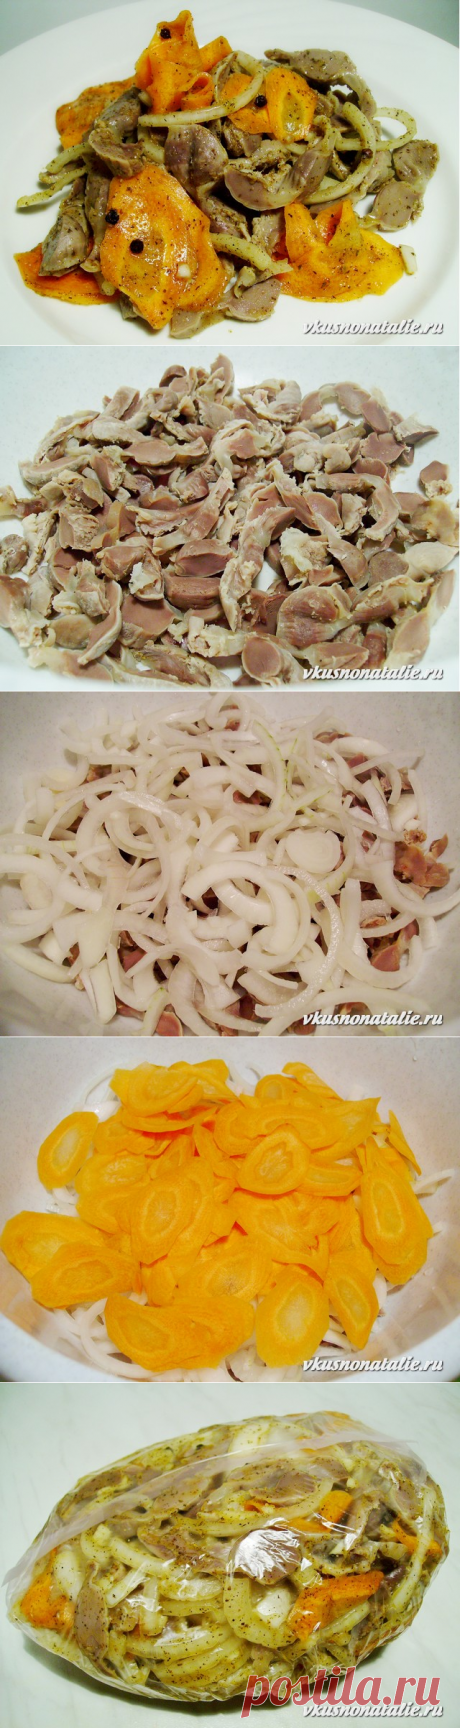 Салат из куриных желудков (куриные желудки по-корейски)